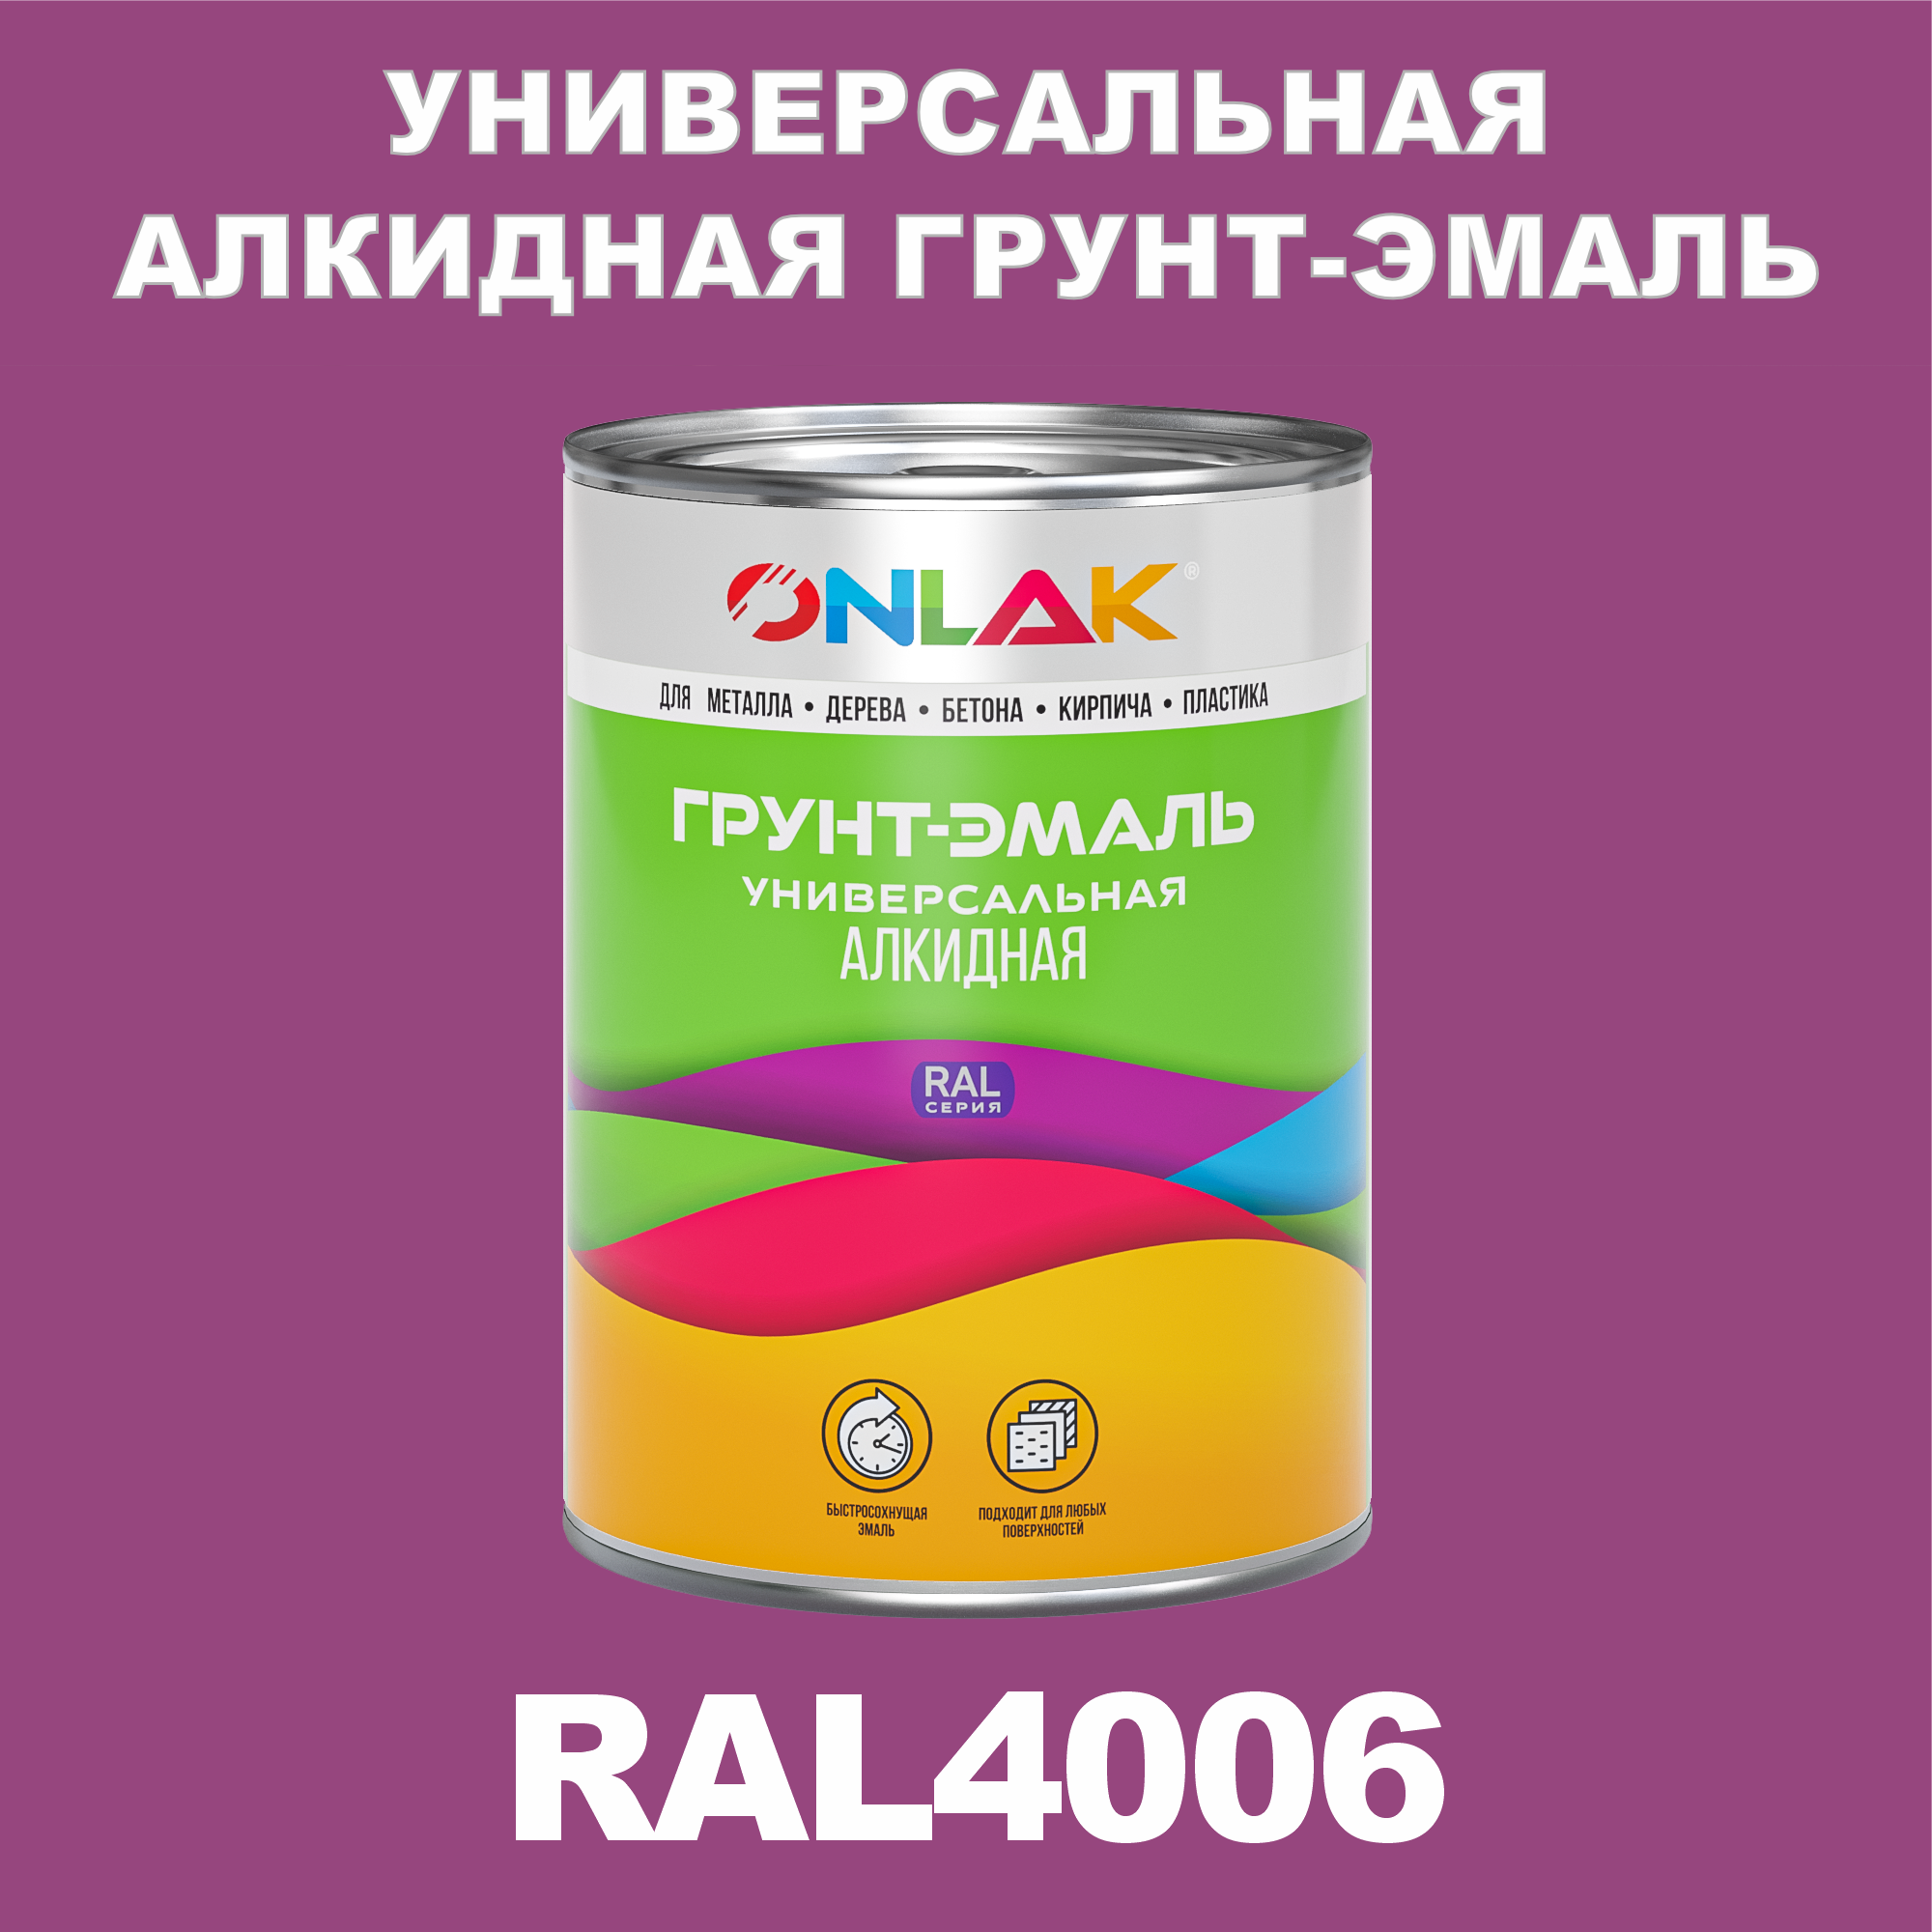 Грунт-эмаль ONLAK 1К RAL4006 антикоррозионная алкидная по металлу по ржавчине 1 кг антикоррозионная грунт эмаль onlak ral 4009 фиолетовый 593 мл